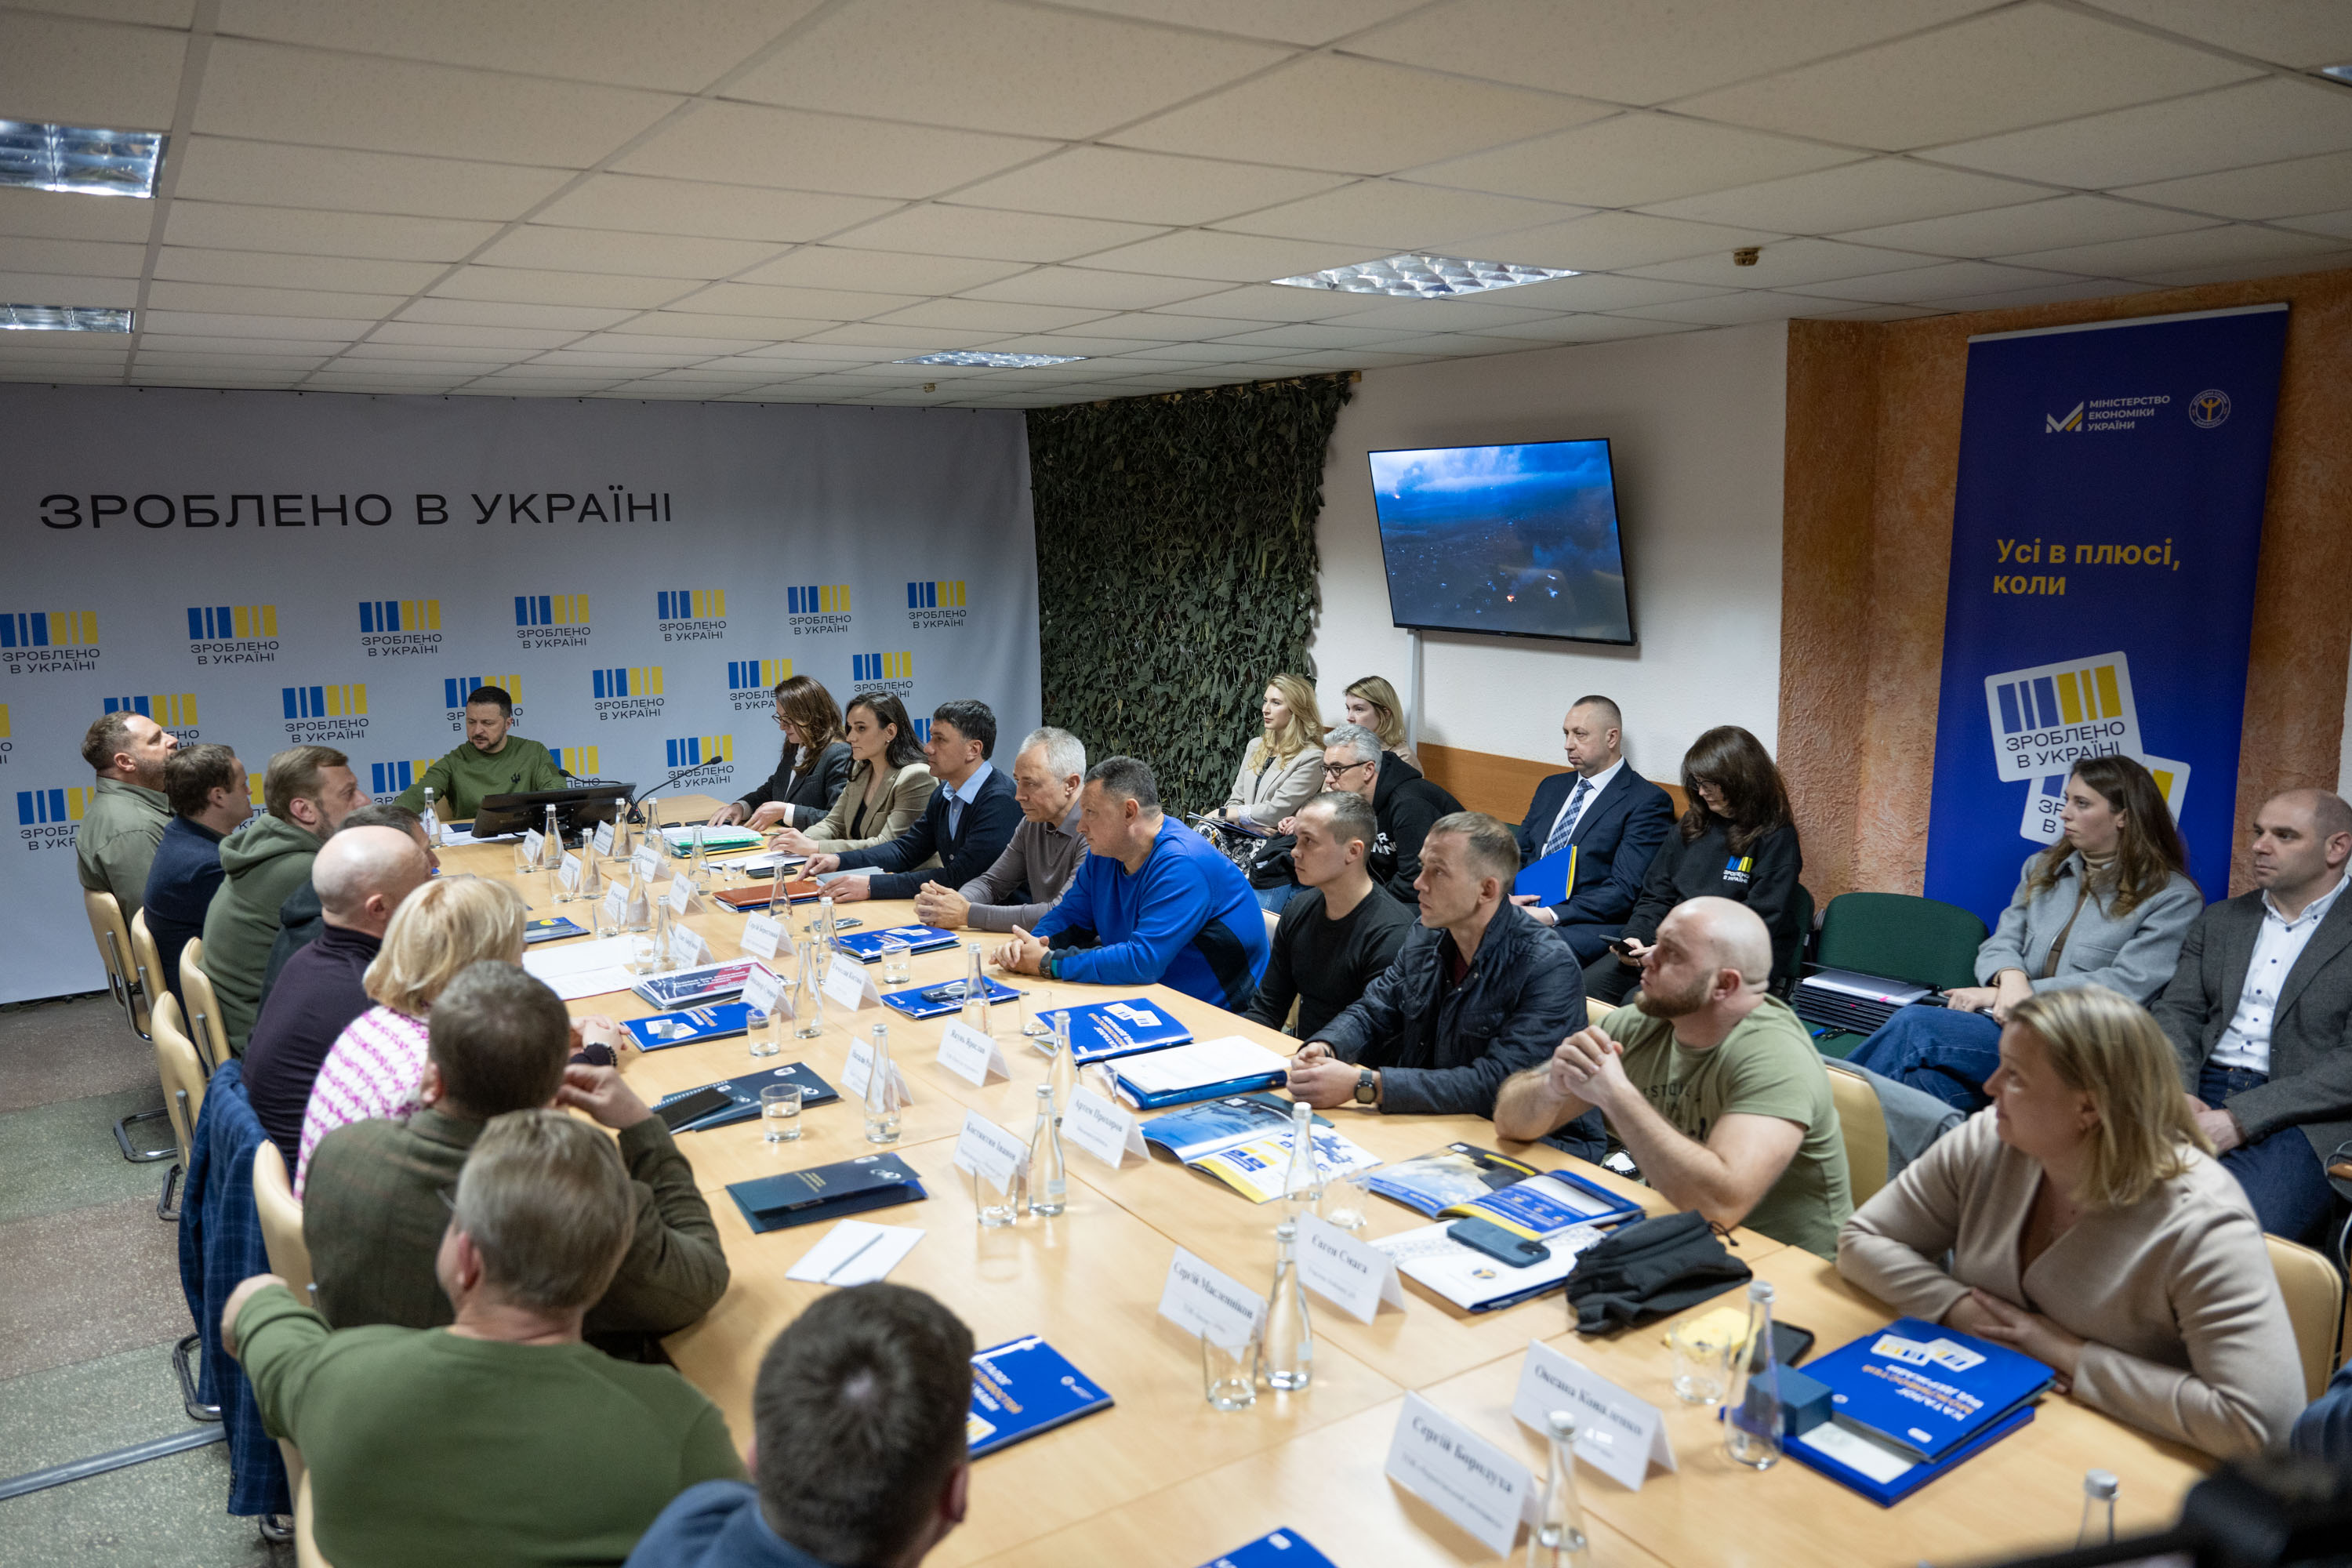  Зеленський взяв участь у презентації проекту "Зроблено в Україні" в Чернігові, 5 квітня 2024 року